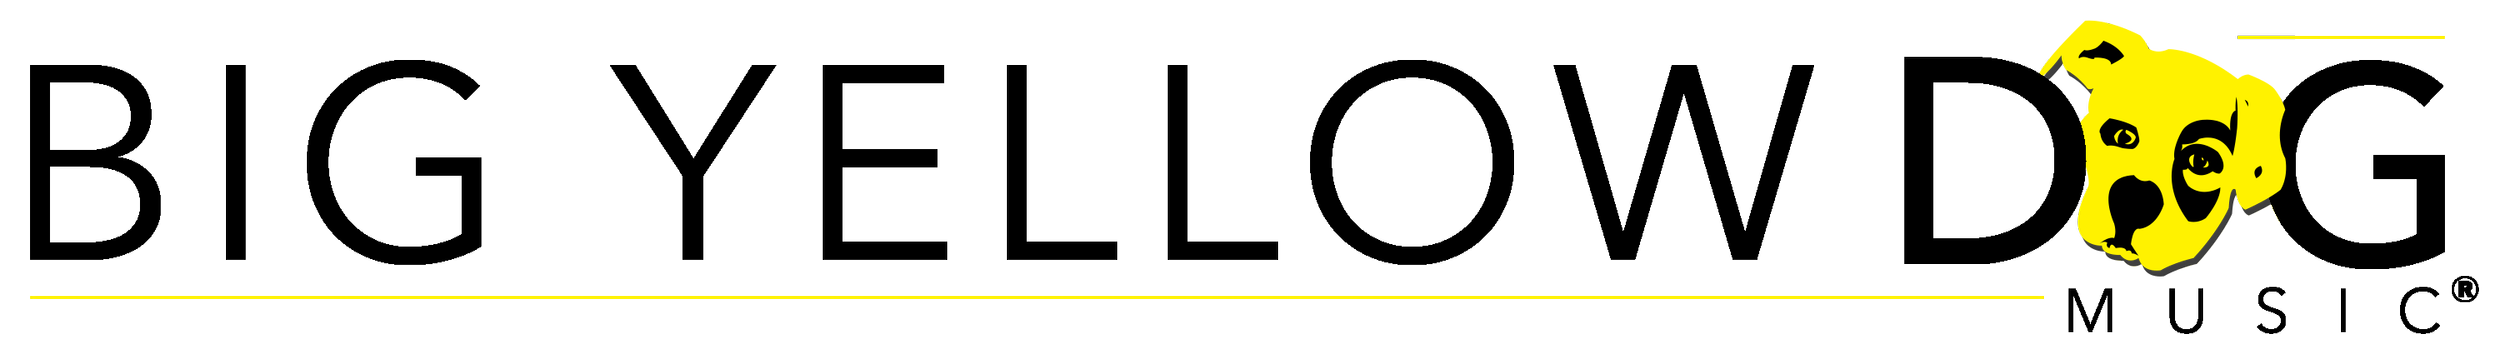 BYD Logo - LINE BOLD - Black.png